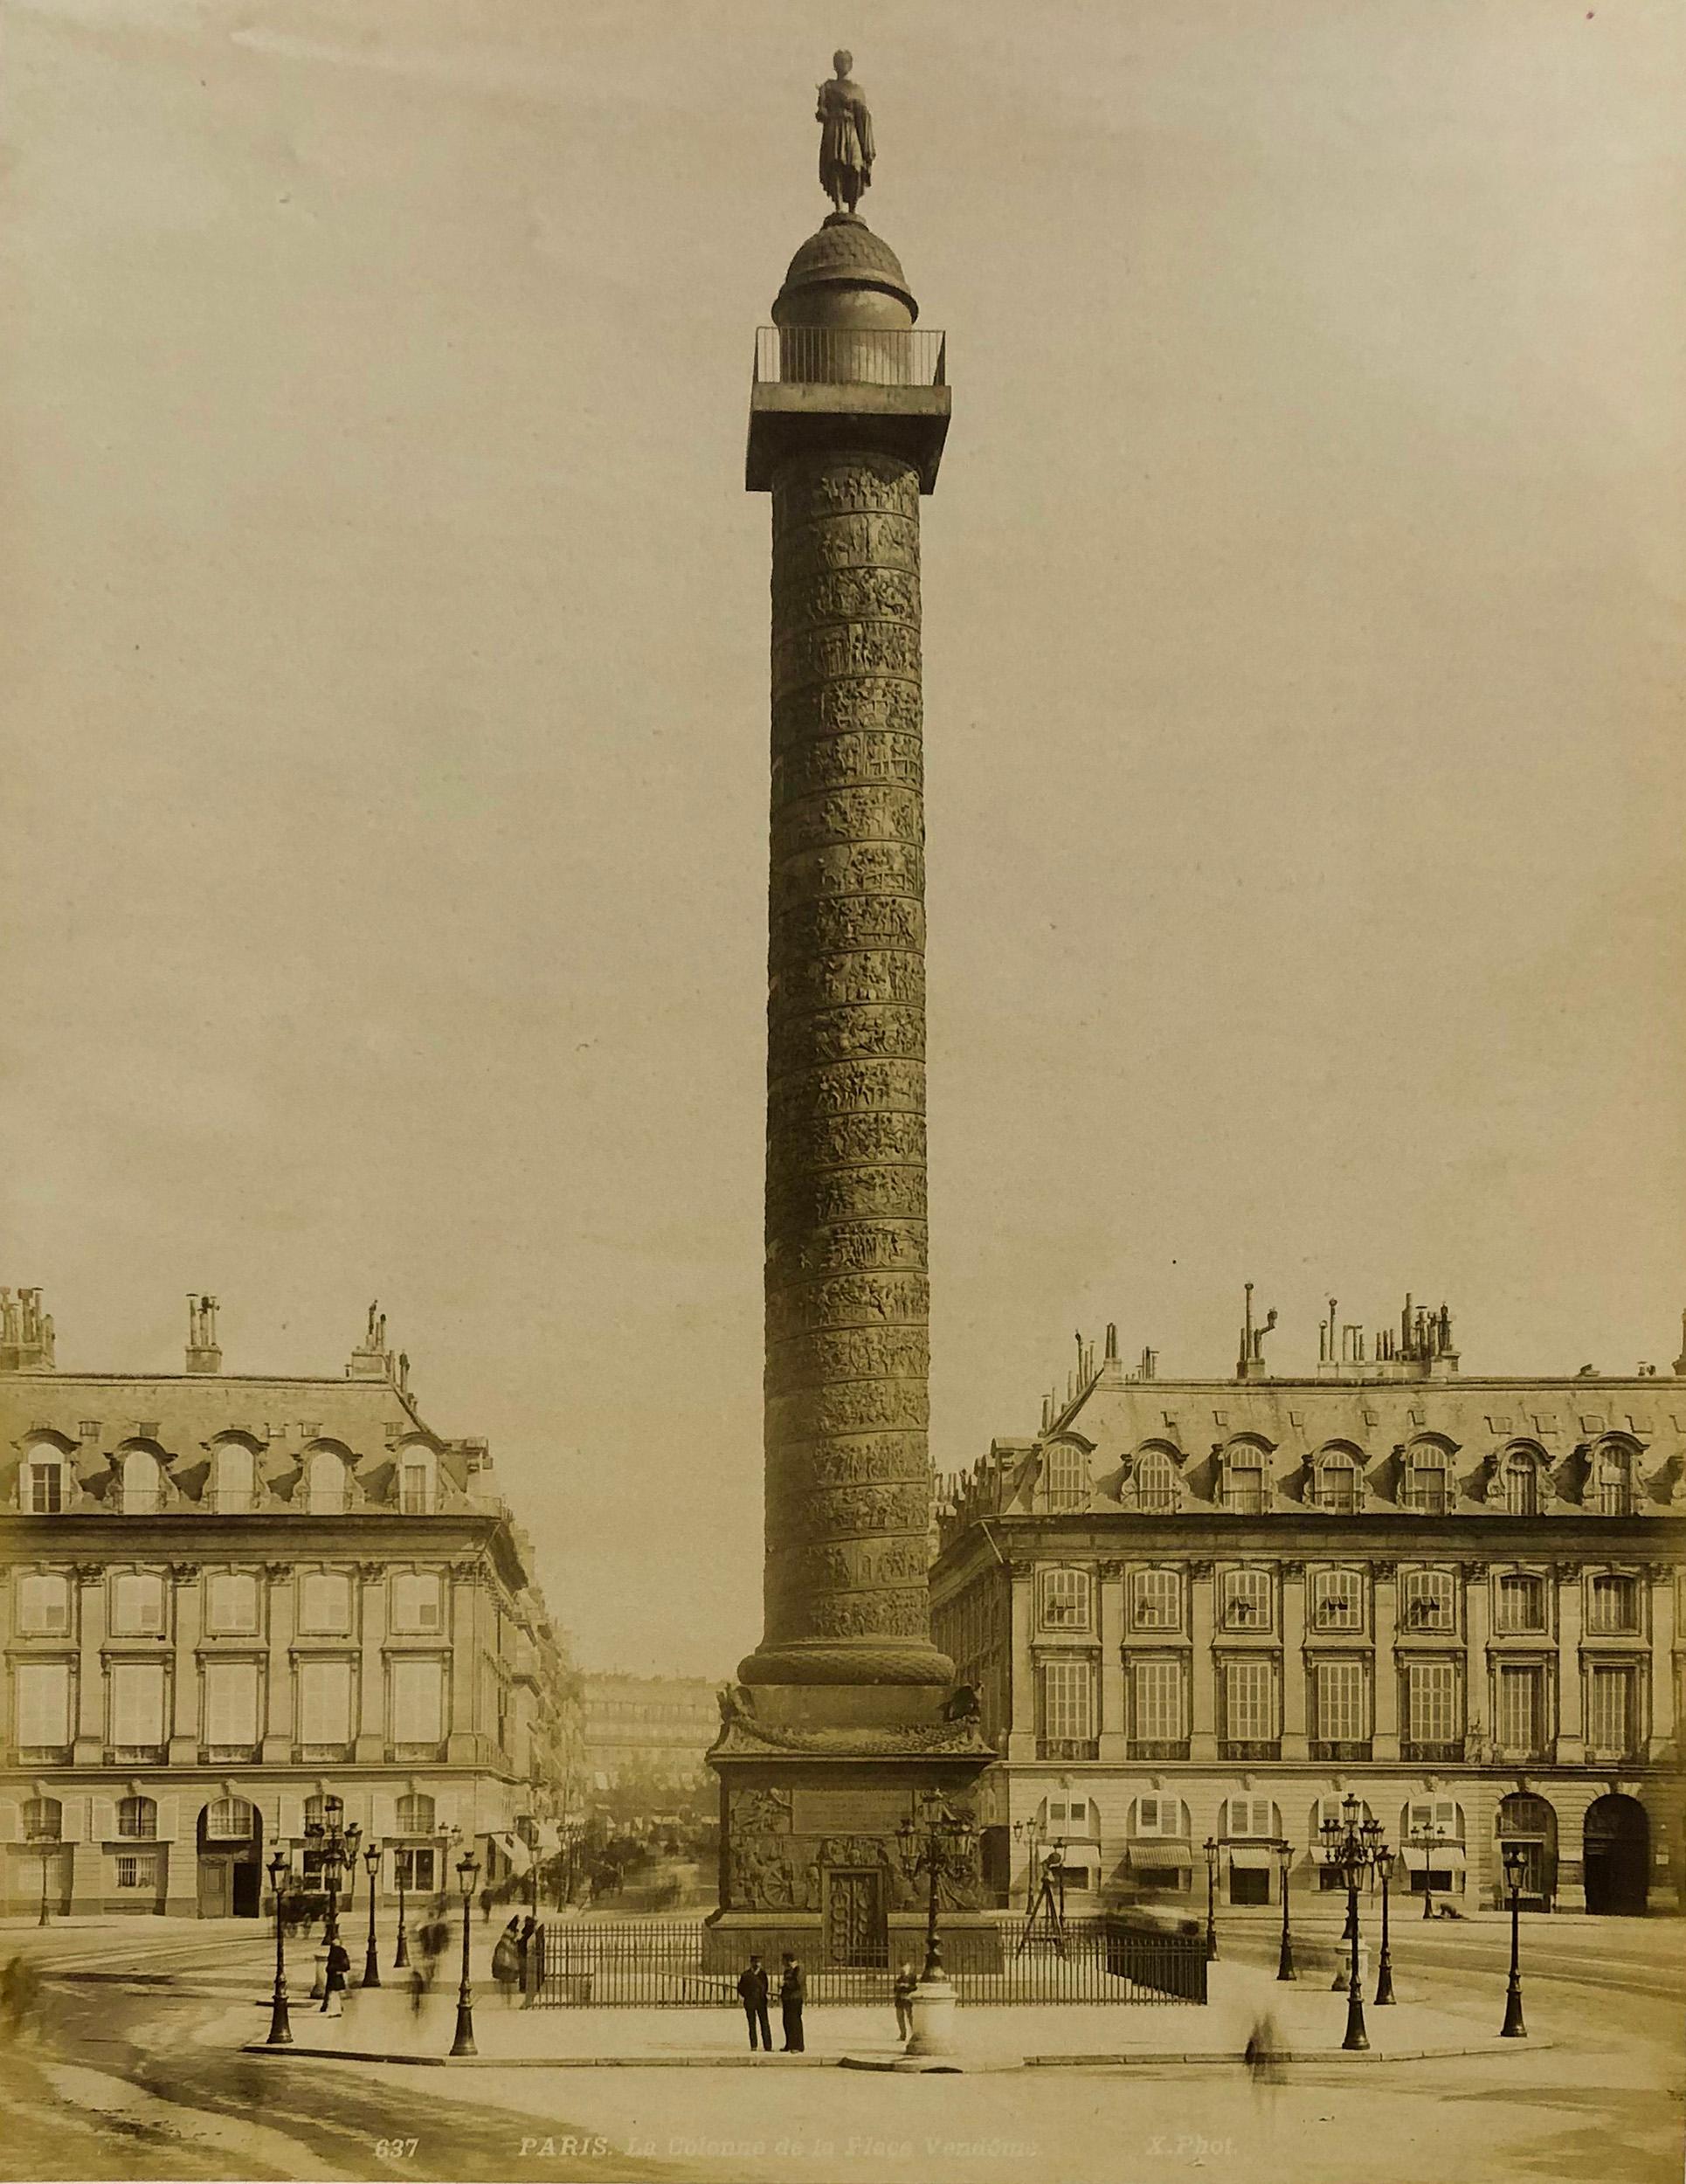 Unknown Black and White Photograph - Place Vendôme - Place Louis-le-Grand - Albumen Photographic Print - Circa 1880s